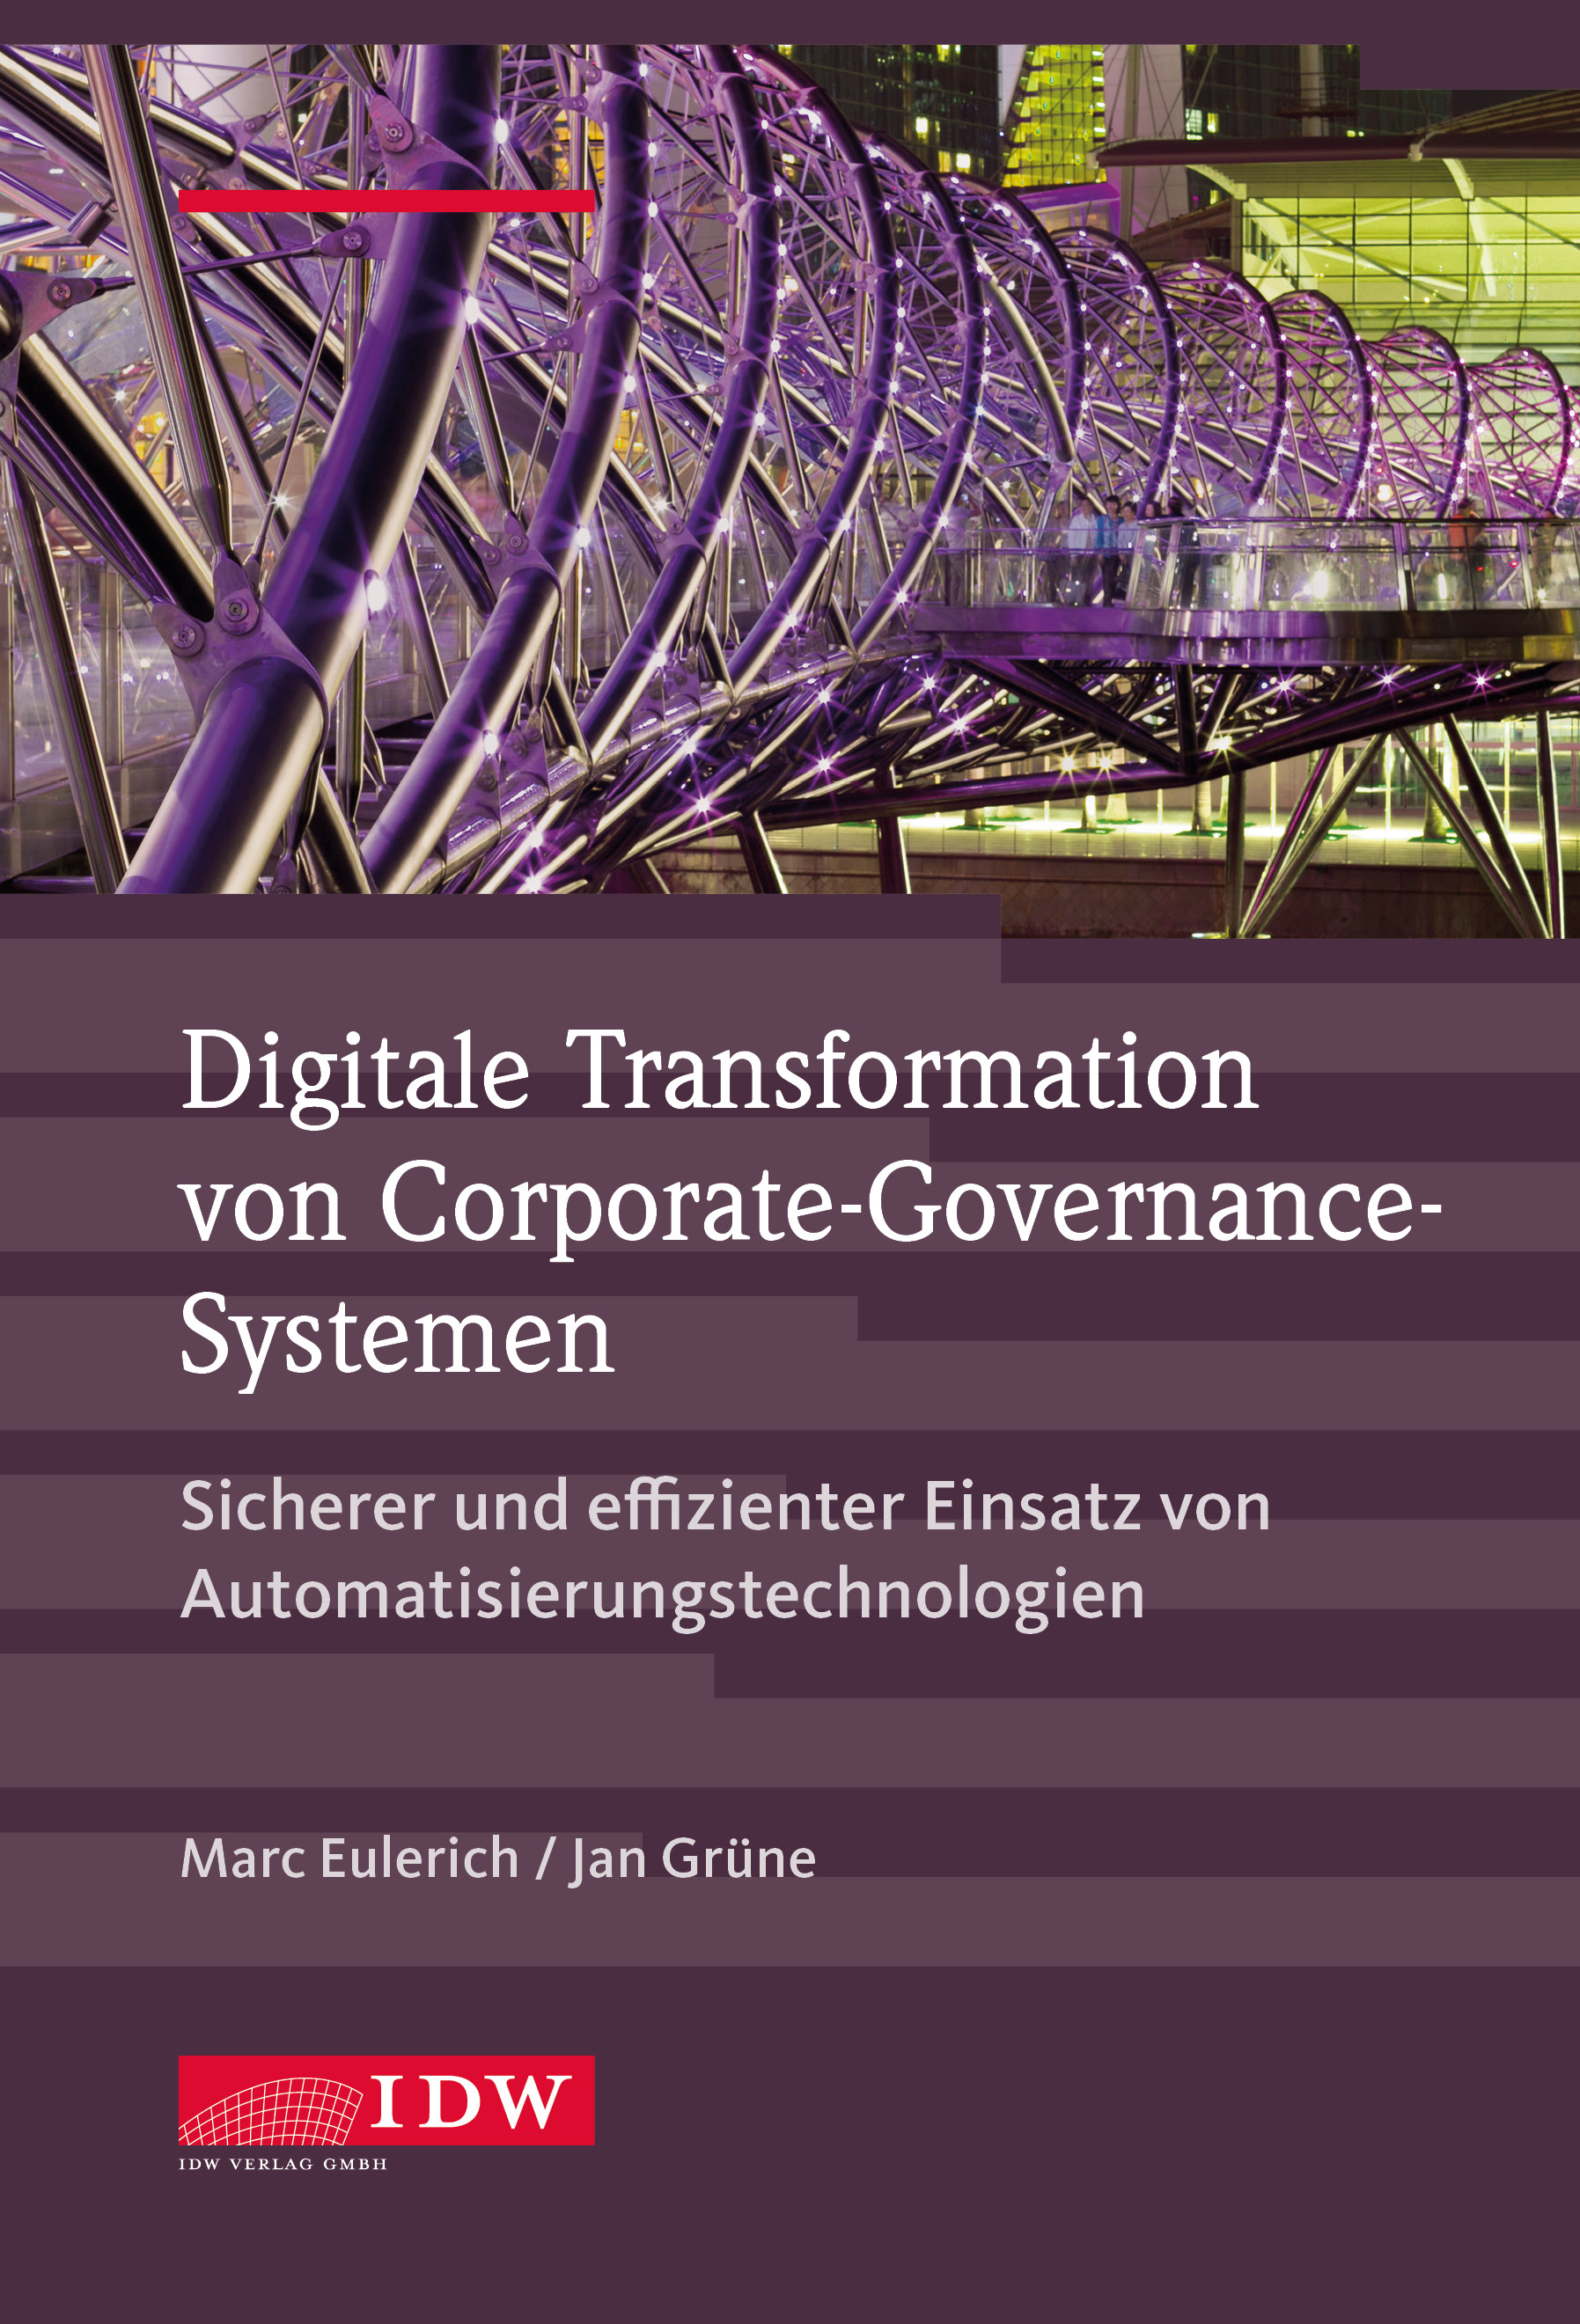 Digitale Transformation von Corporate-Governance-Systemen 